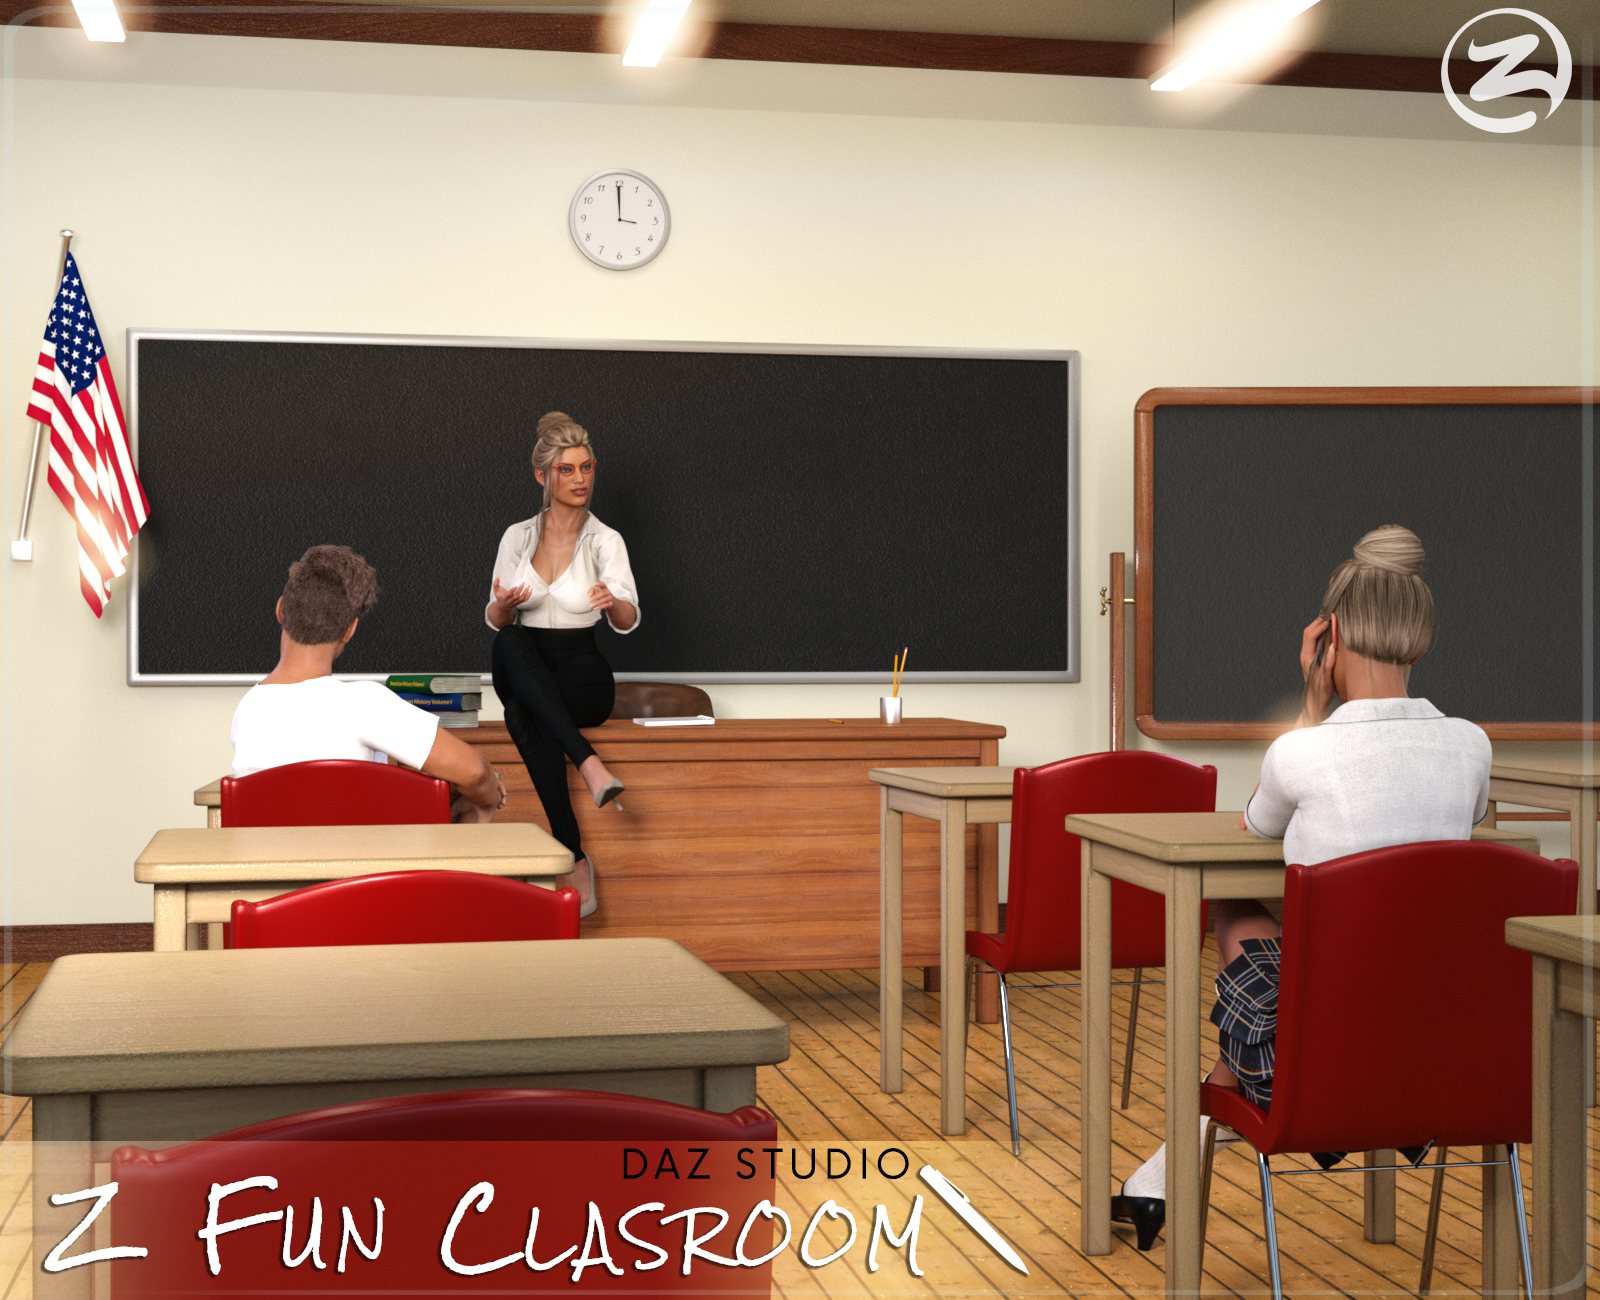 Z Fun Classroom – Daz Studio_DAZ3D下载站